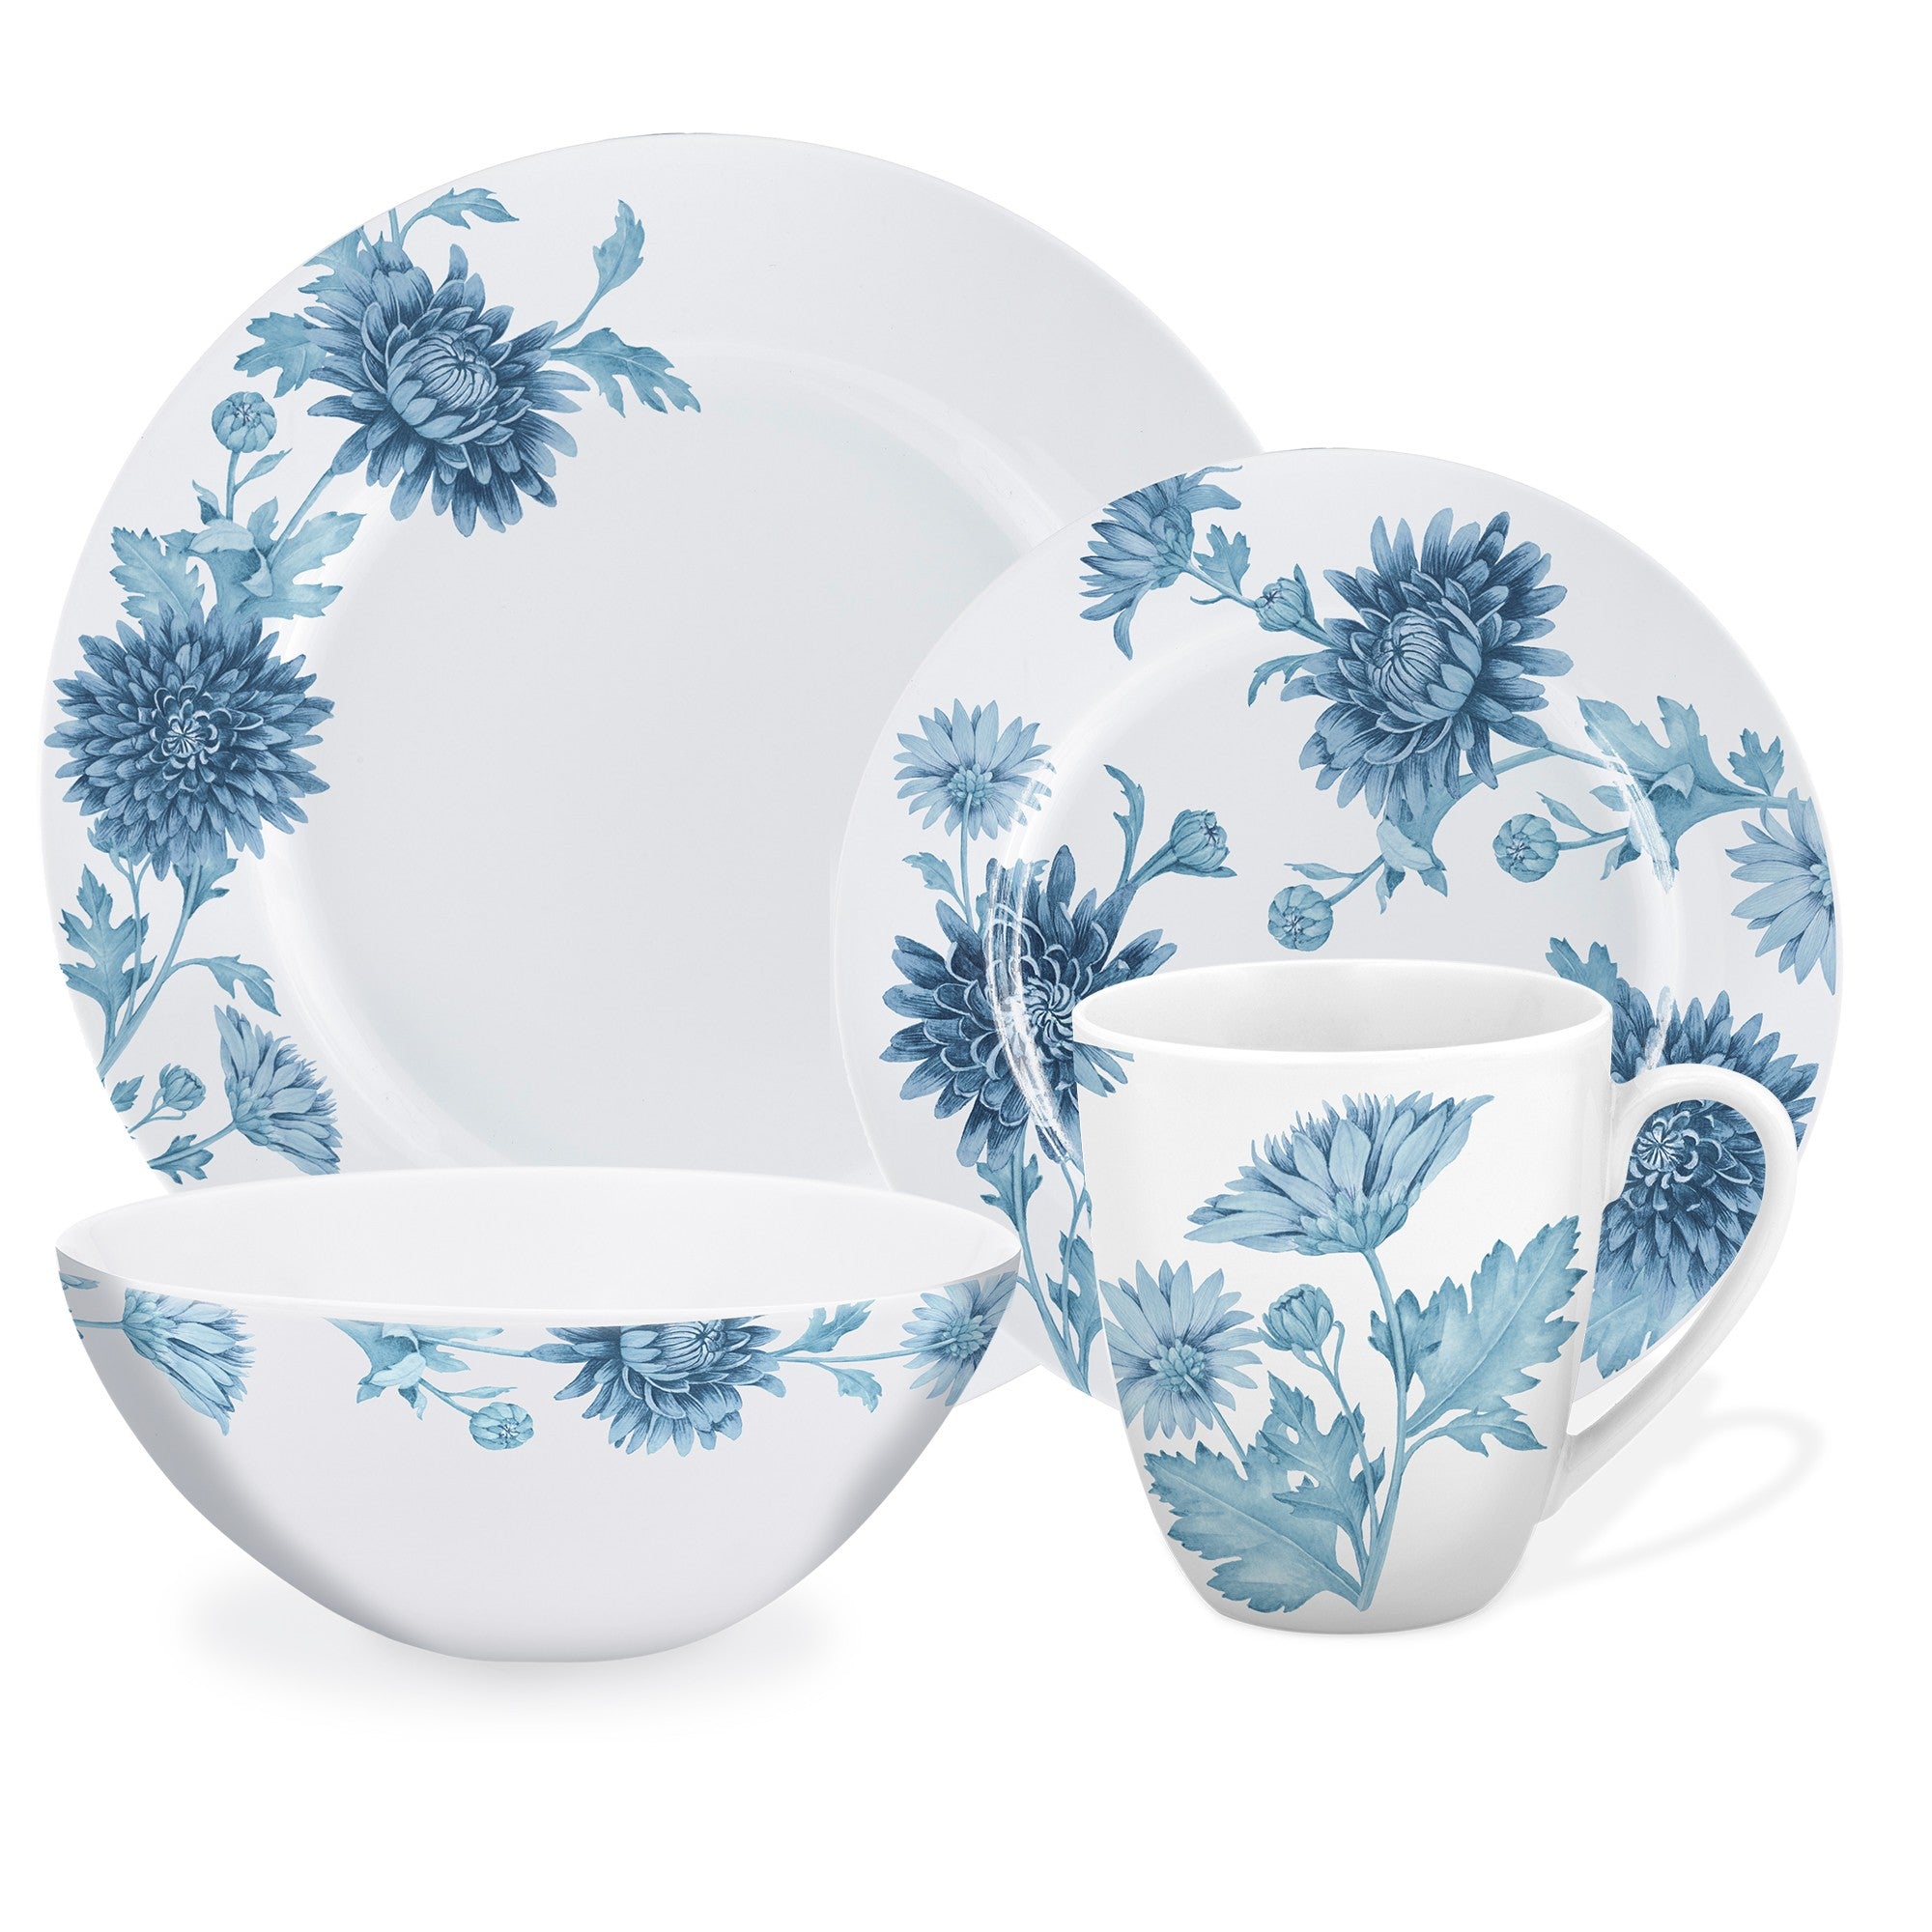 title:Safdie & Co. Luxury Premium Porcelain Dinnerset 16 Piece Set Austin;color:Multi